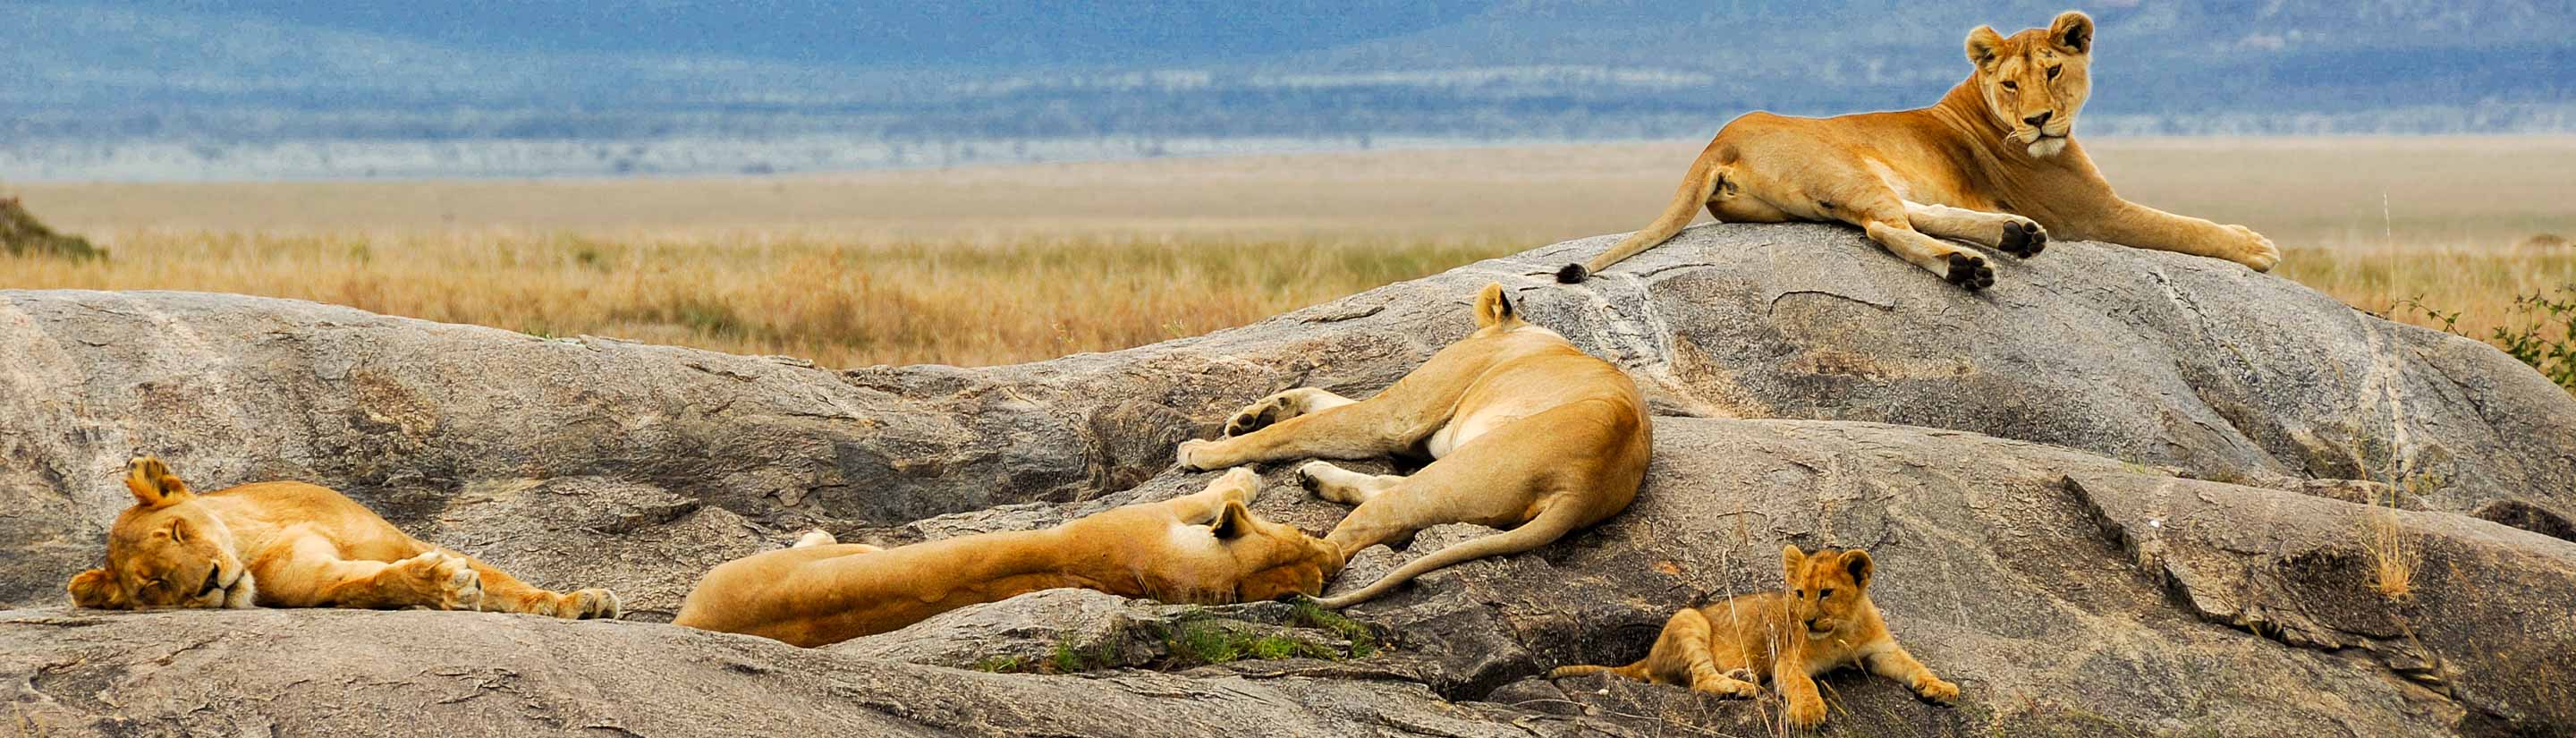 Kenia-Rundreise: der Safari-Klassiker 